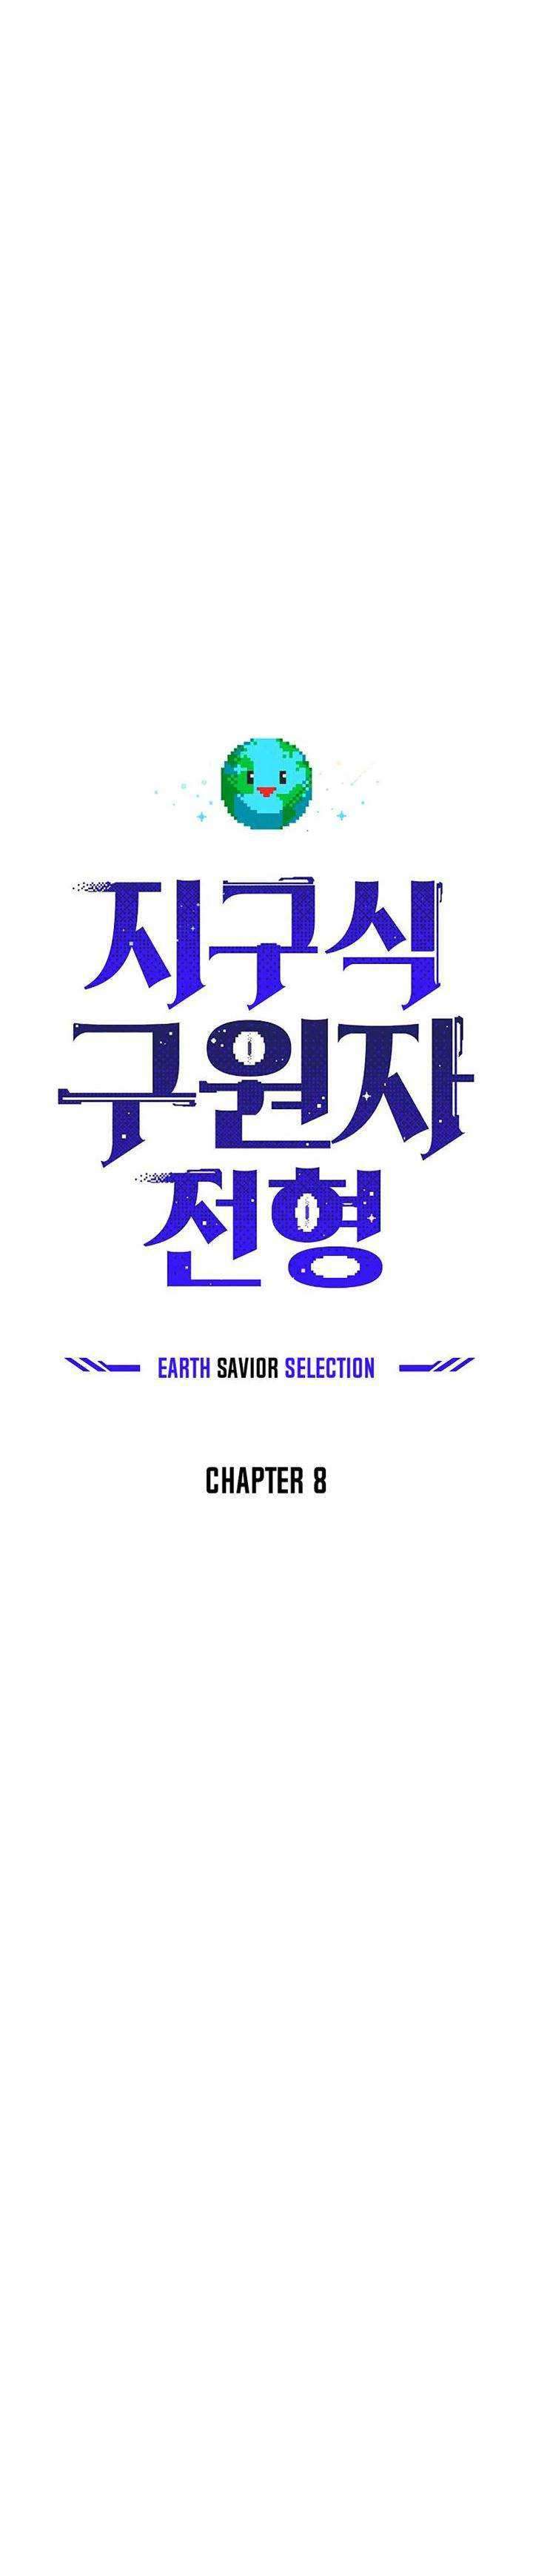 The Earth Savior Selection Chapter 8